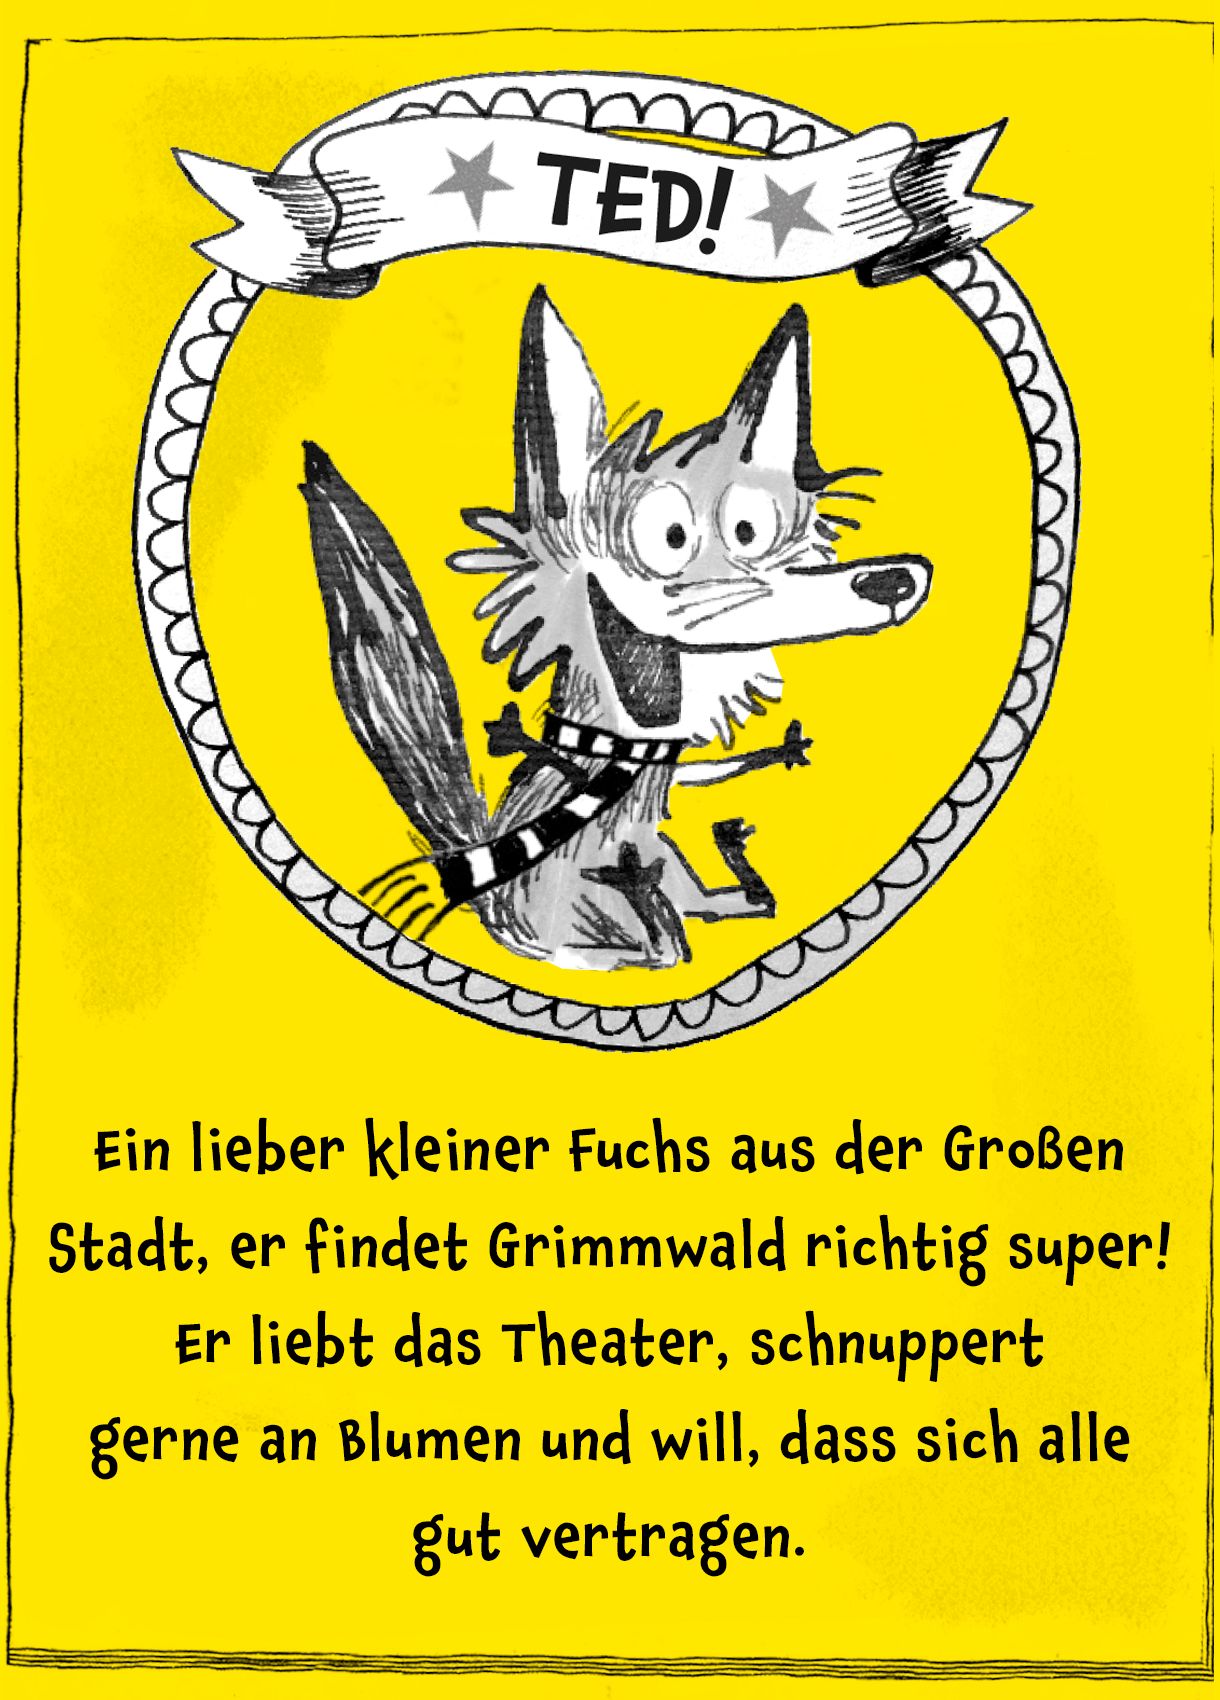 Bild von Fuchs Ted mit Text darunter: "Ein lieber kleiner Fuchs aus der Großen Stadt, er findet Grimmwald richtig super! Er liebt das Theater, schnuppert gerne an Blumen und will, dass sich alle gut vertragen."